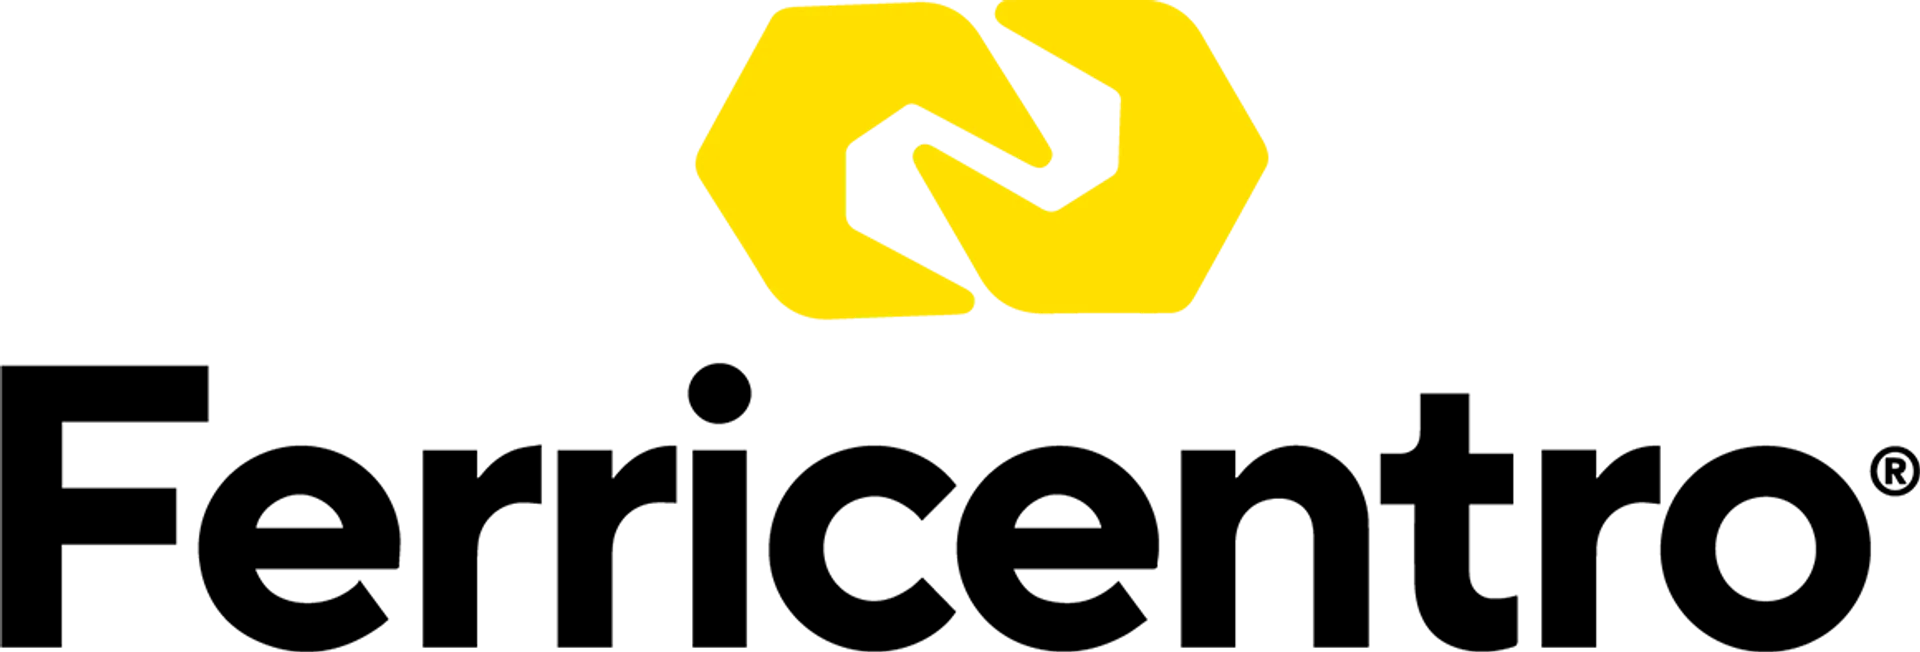 FERRICENTRO logo de catálogo